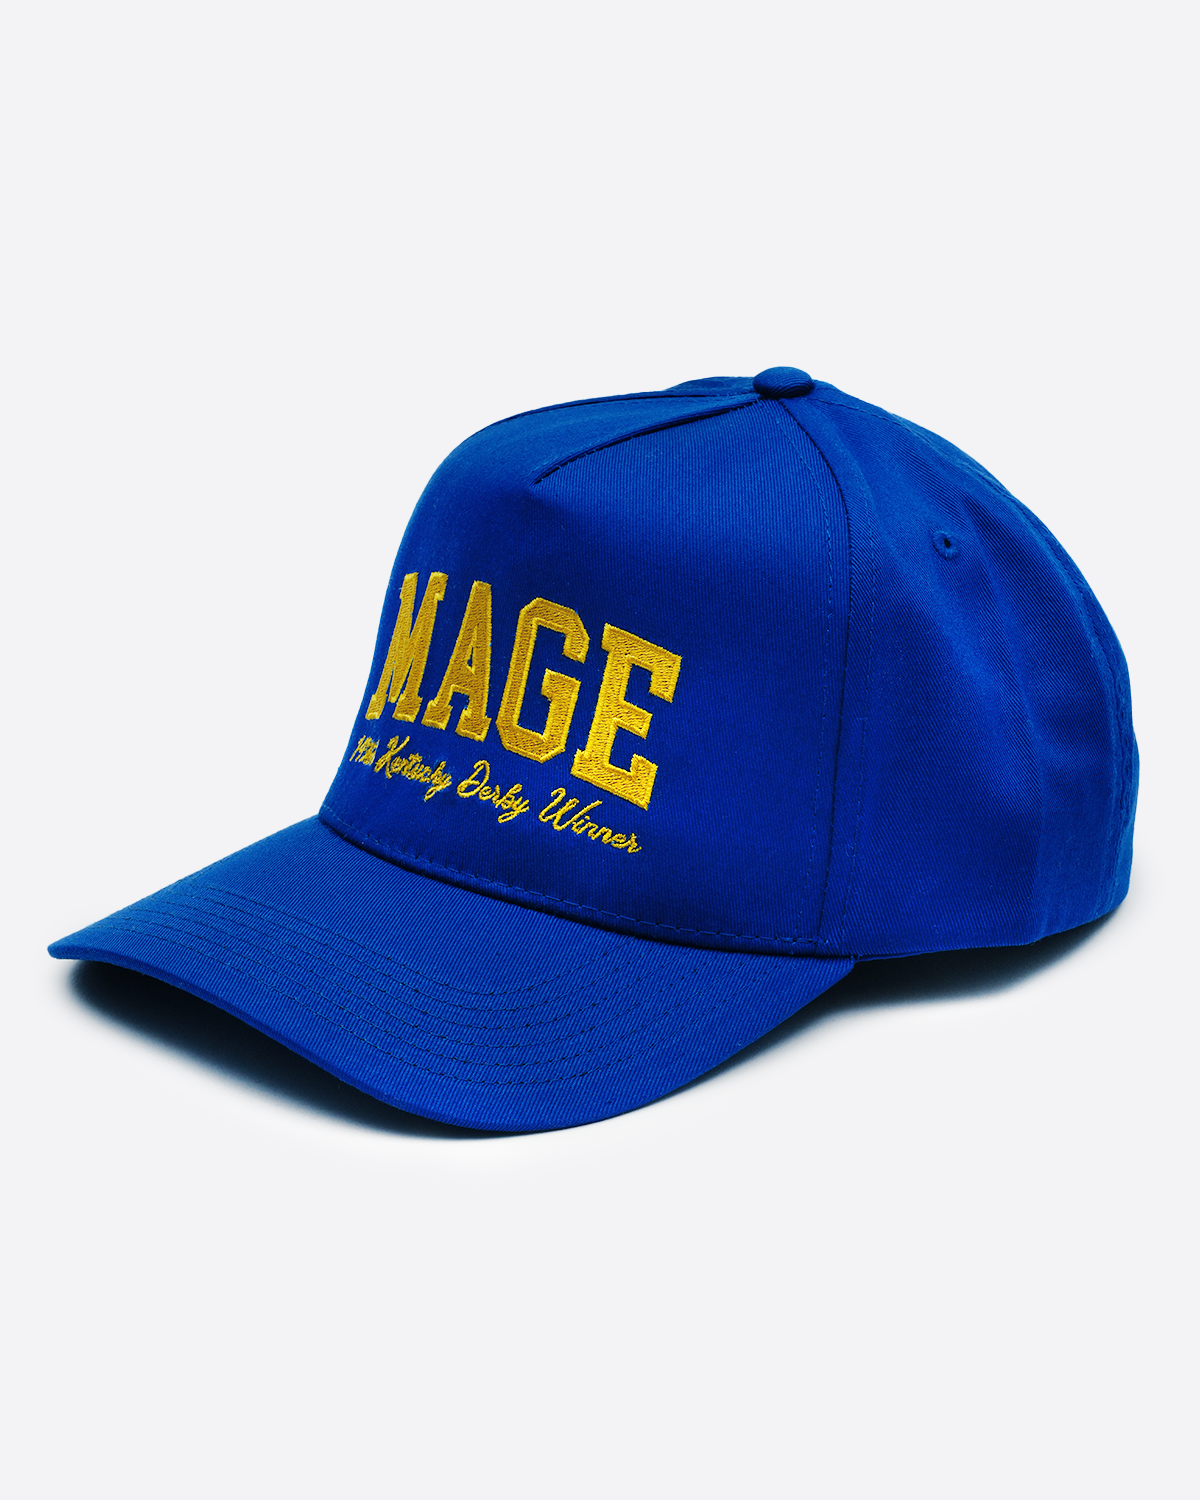 MAGE - Kentucky Derby Winner Hat